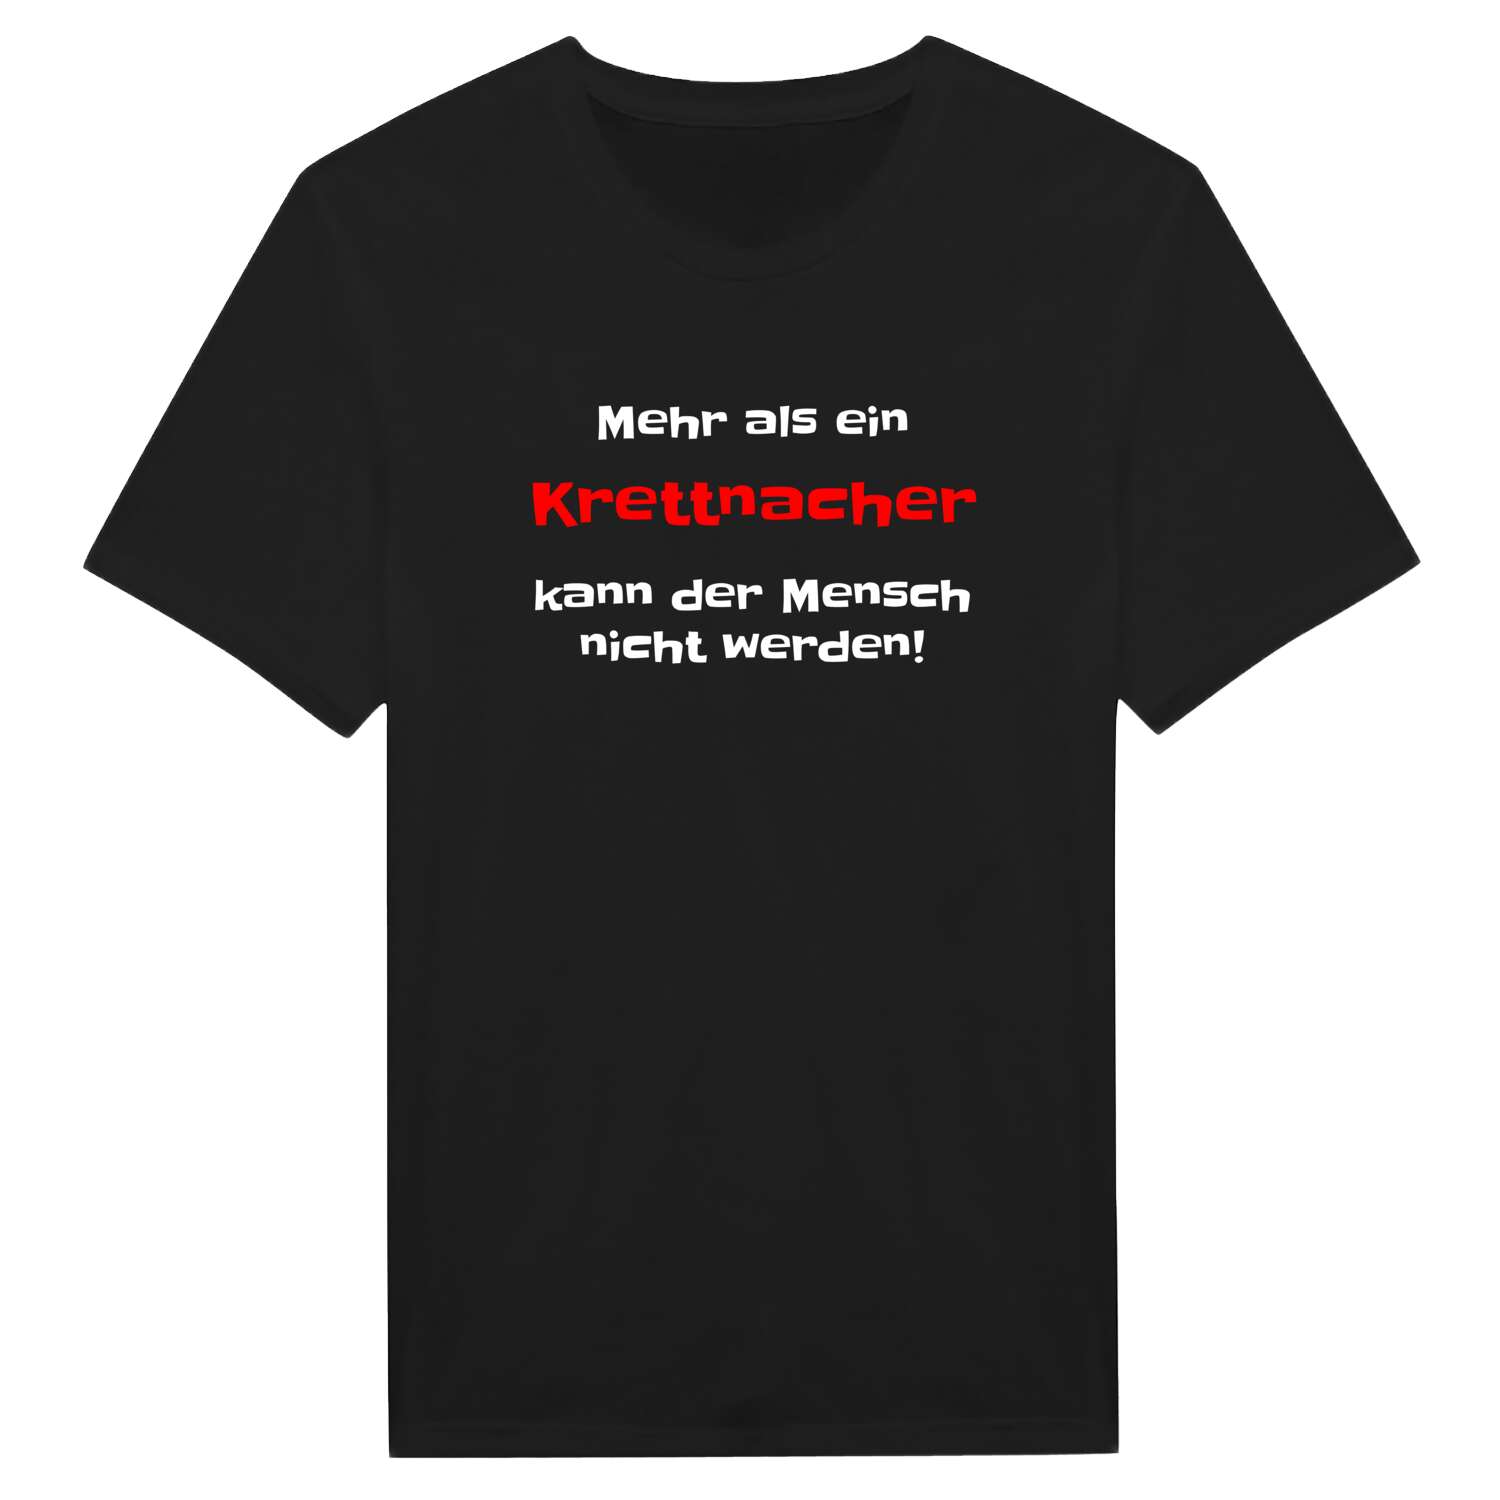 Krettnach T-Shirt »Mehr als ein«